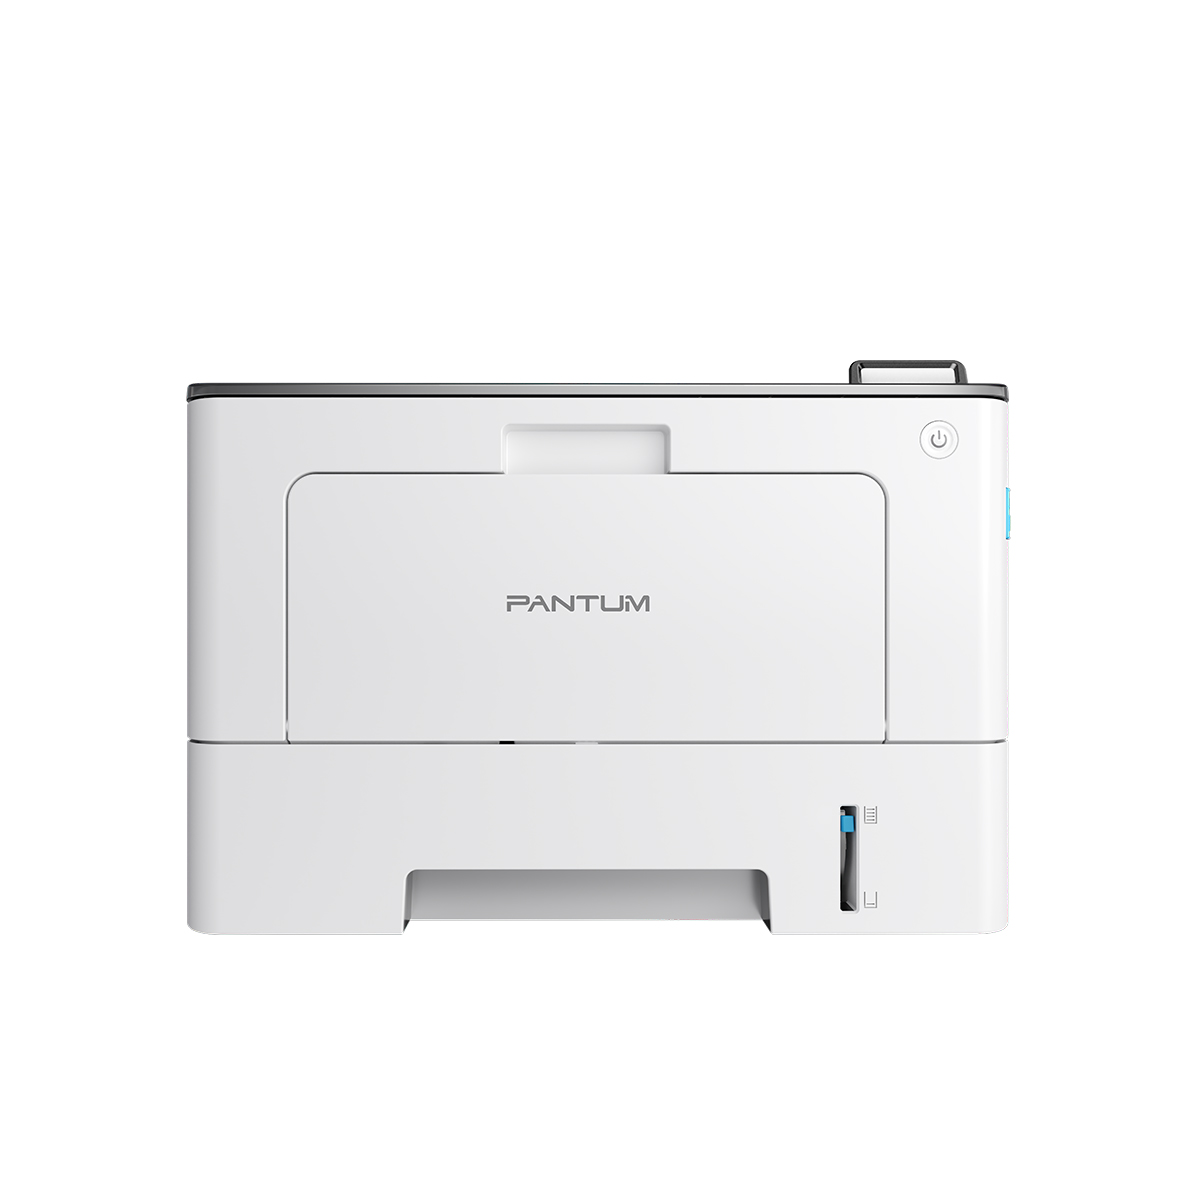 Принтер лазерный Pantum BP5100DN, черно-белая печать, 40 стр/мин, 1200 x 1200 dpi, 512Мб RAM, USB, Ethernet